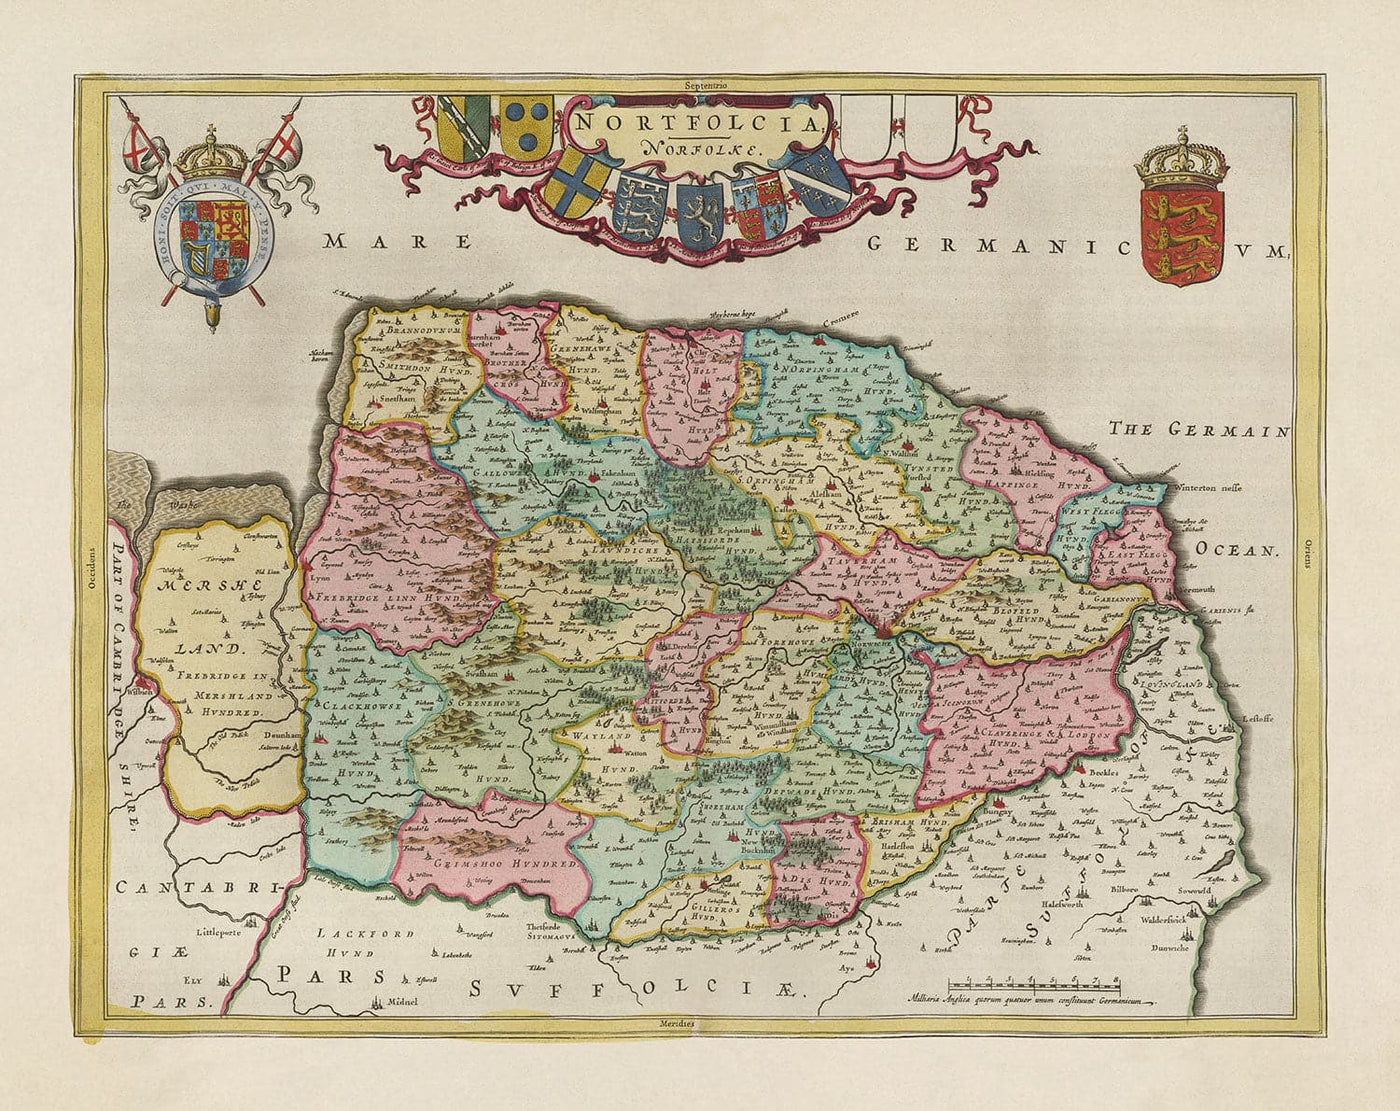 Alte Karte von Norfolk im Jahre 1665 von Joan Blaeu - Norwich, Tolles Yarmouth, King's Lynn, Thetford, Swaffham, Fakenham, East Anglia